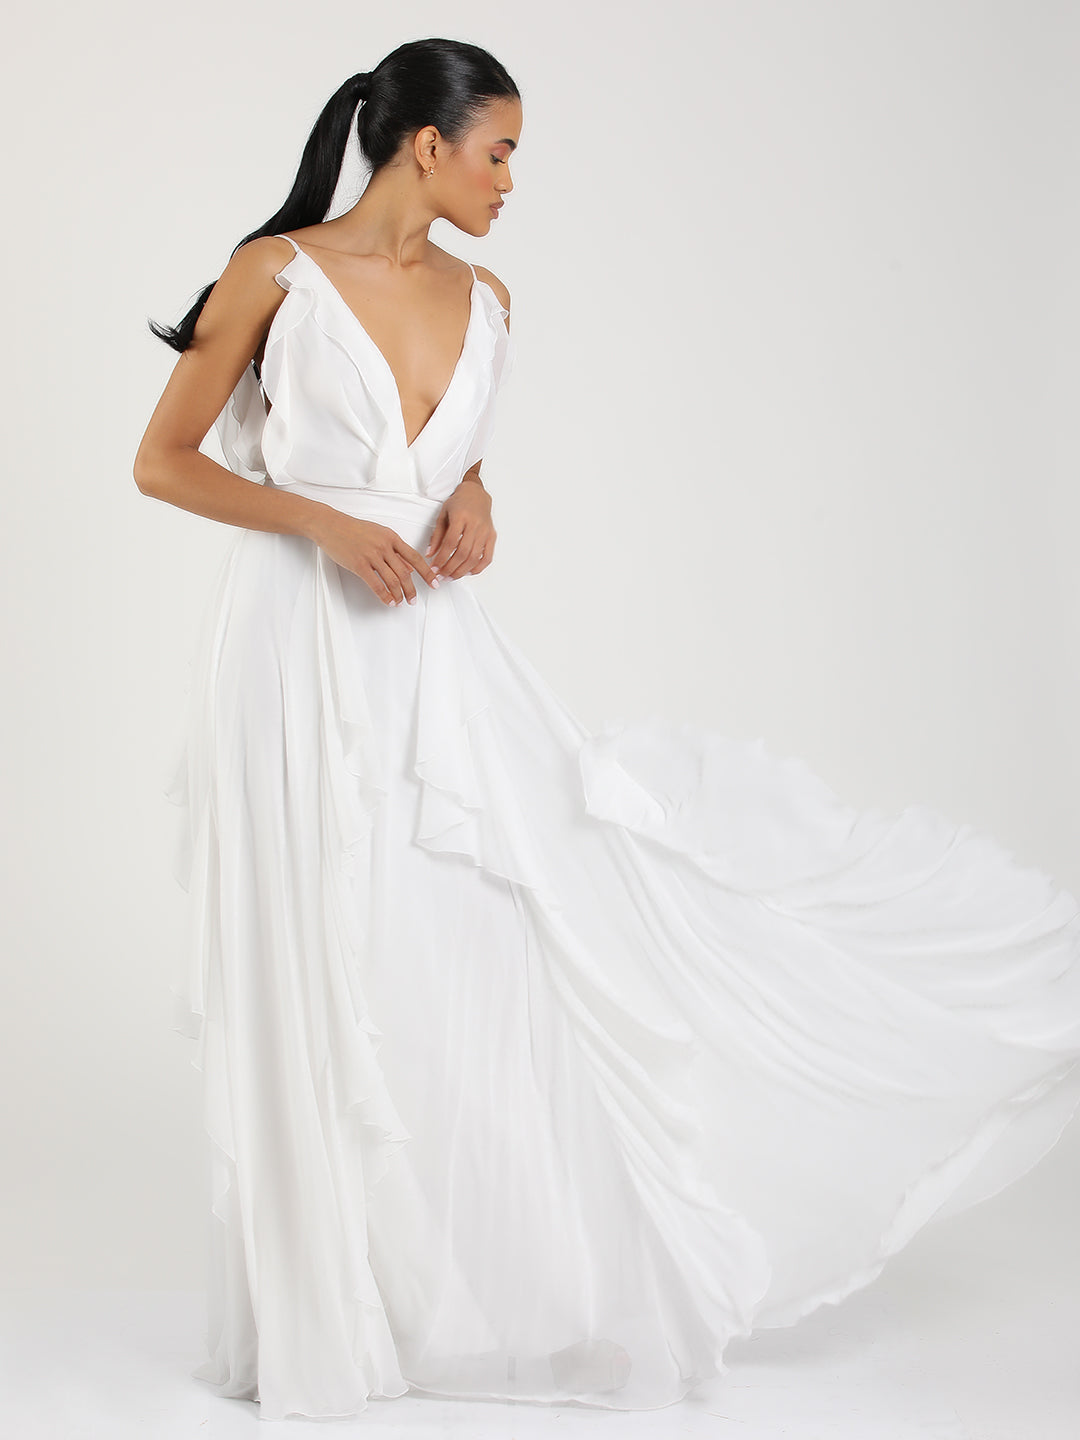 Ciara Ruffled Dress White